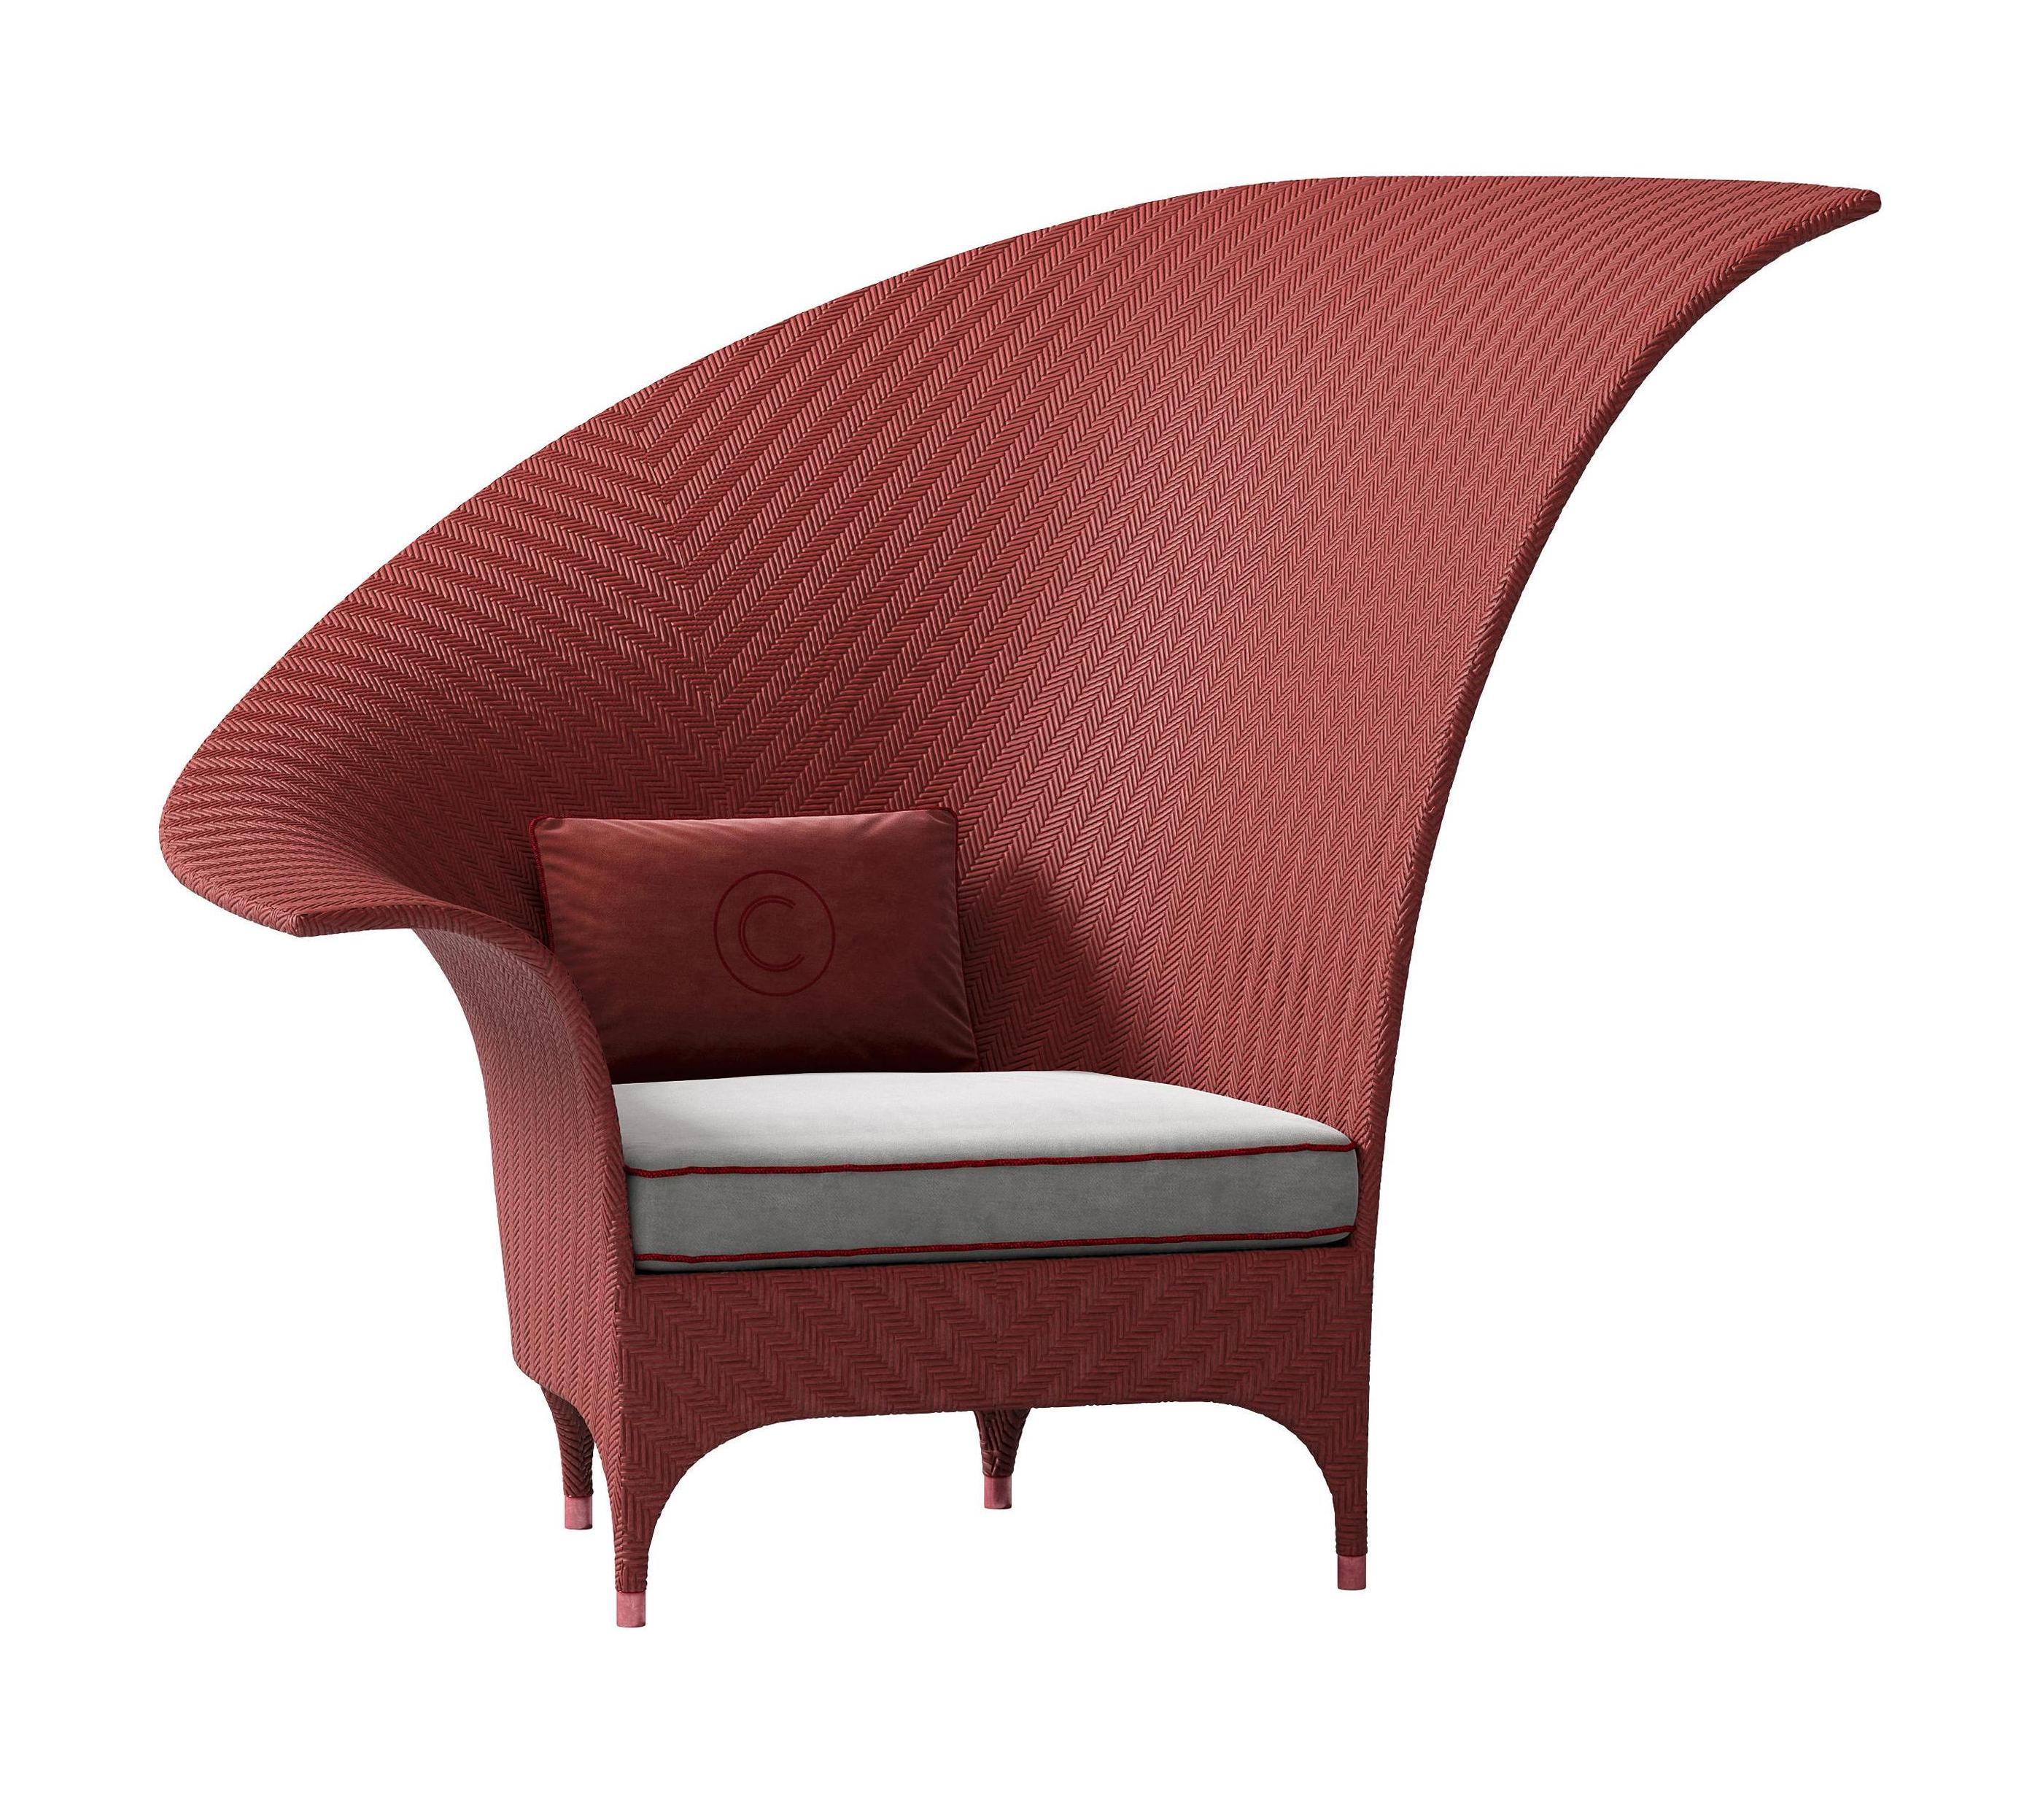 Exquisite Red Bergere Outdoor Armchair